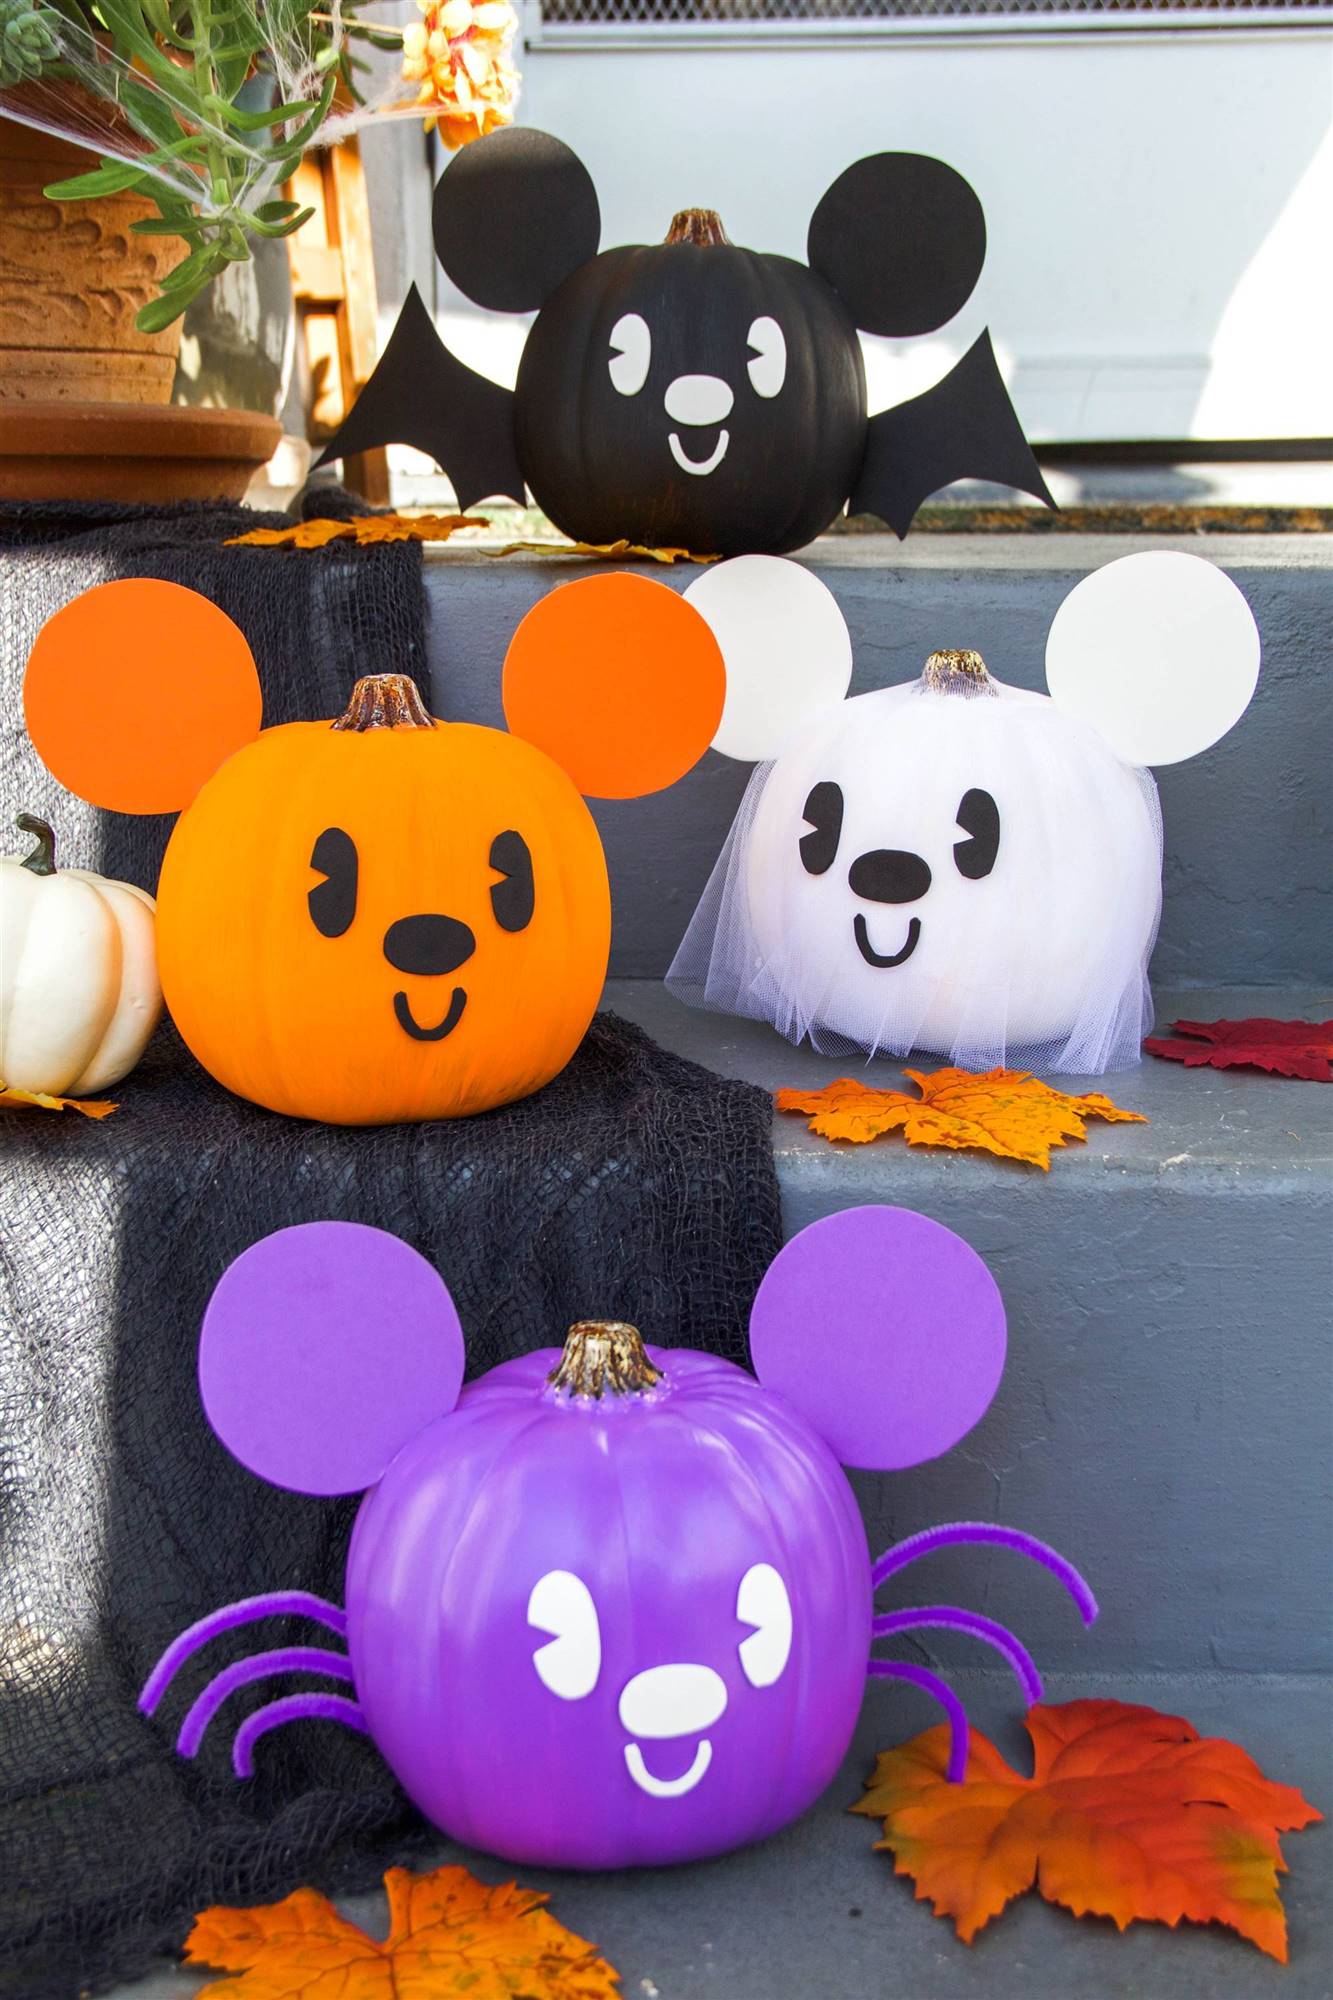 Calabazas de Halloween decoradas como personajes de Disney